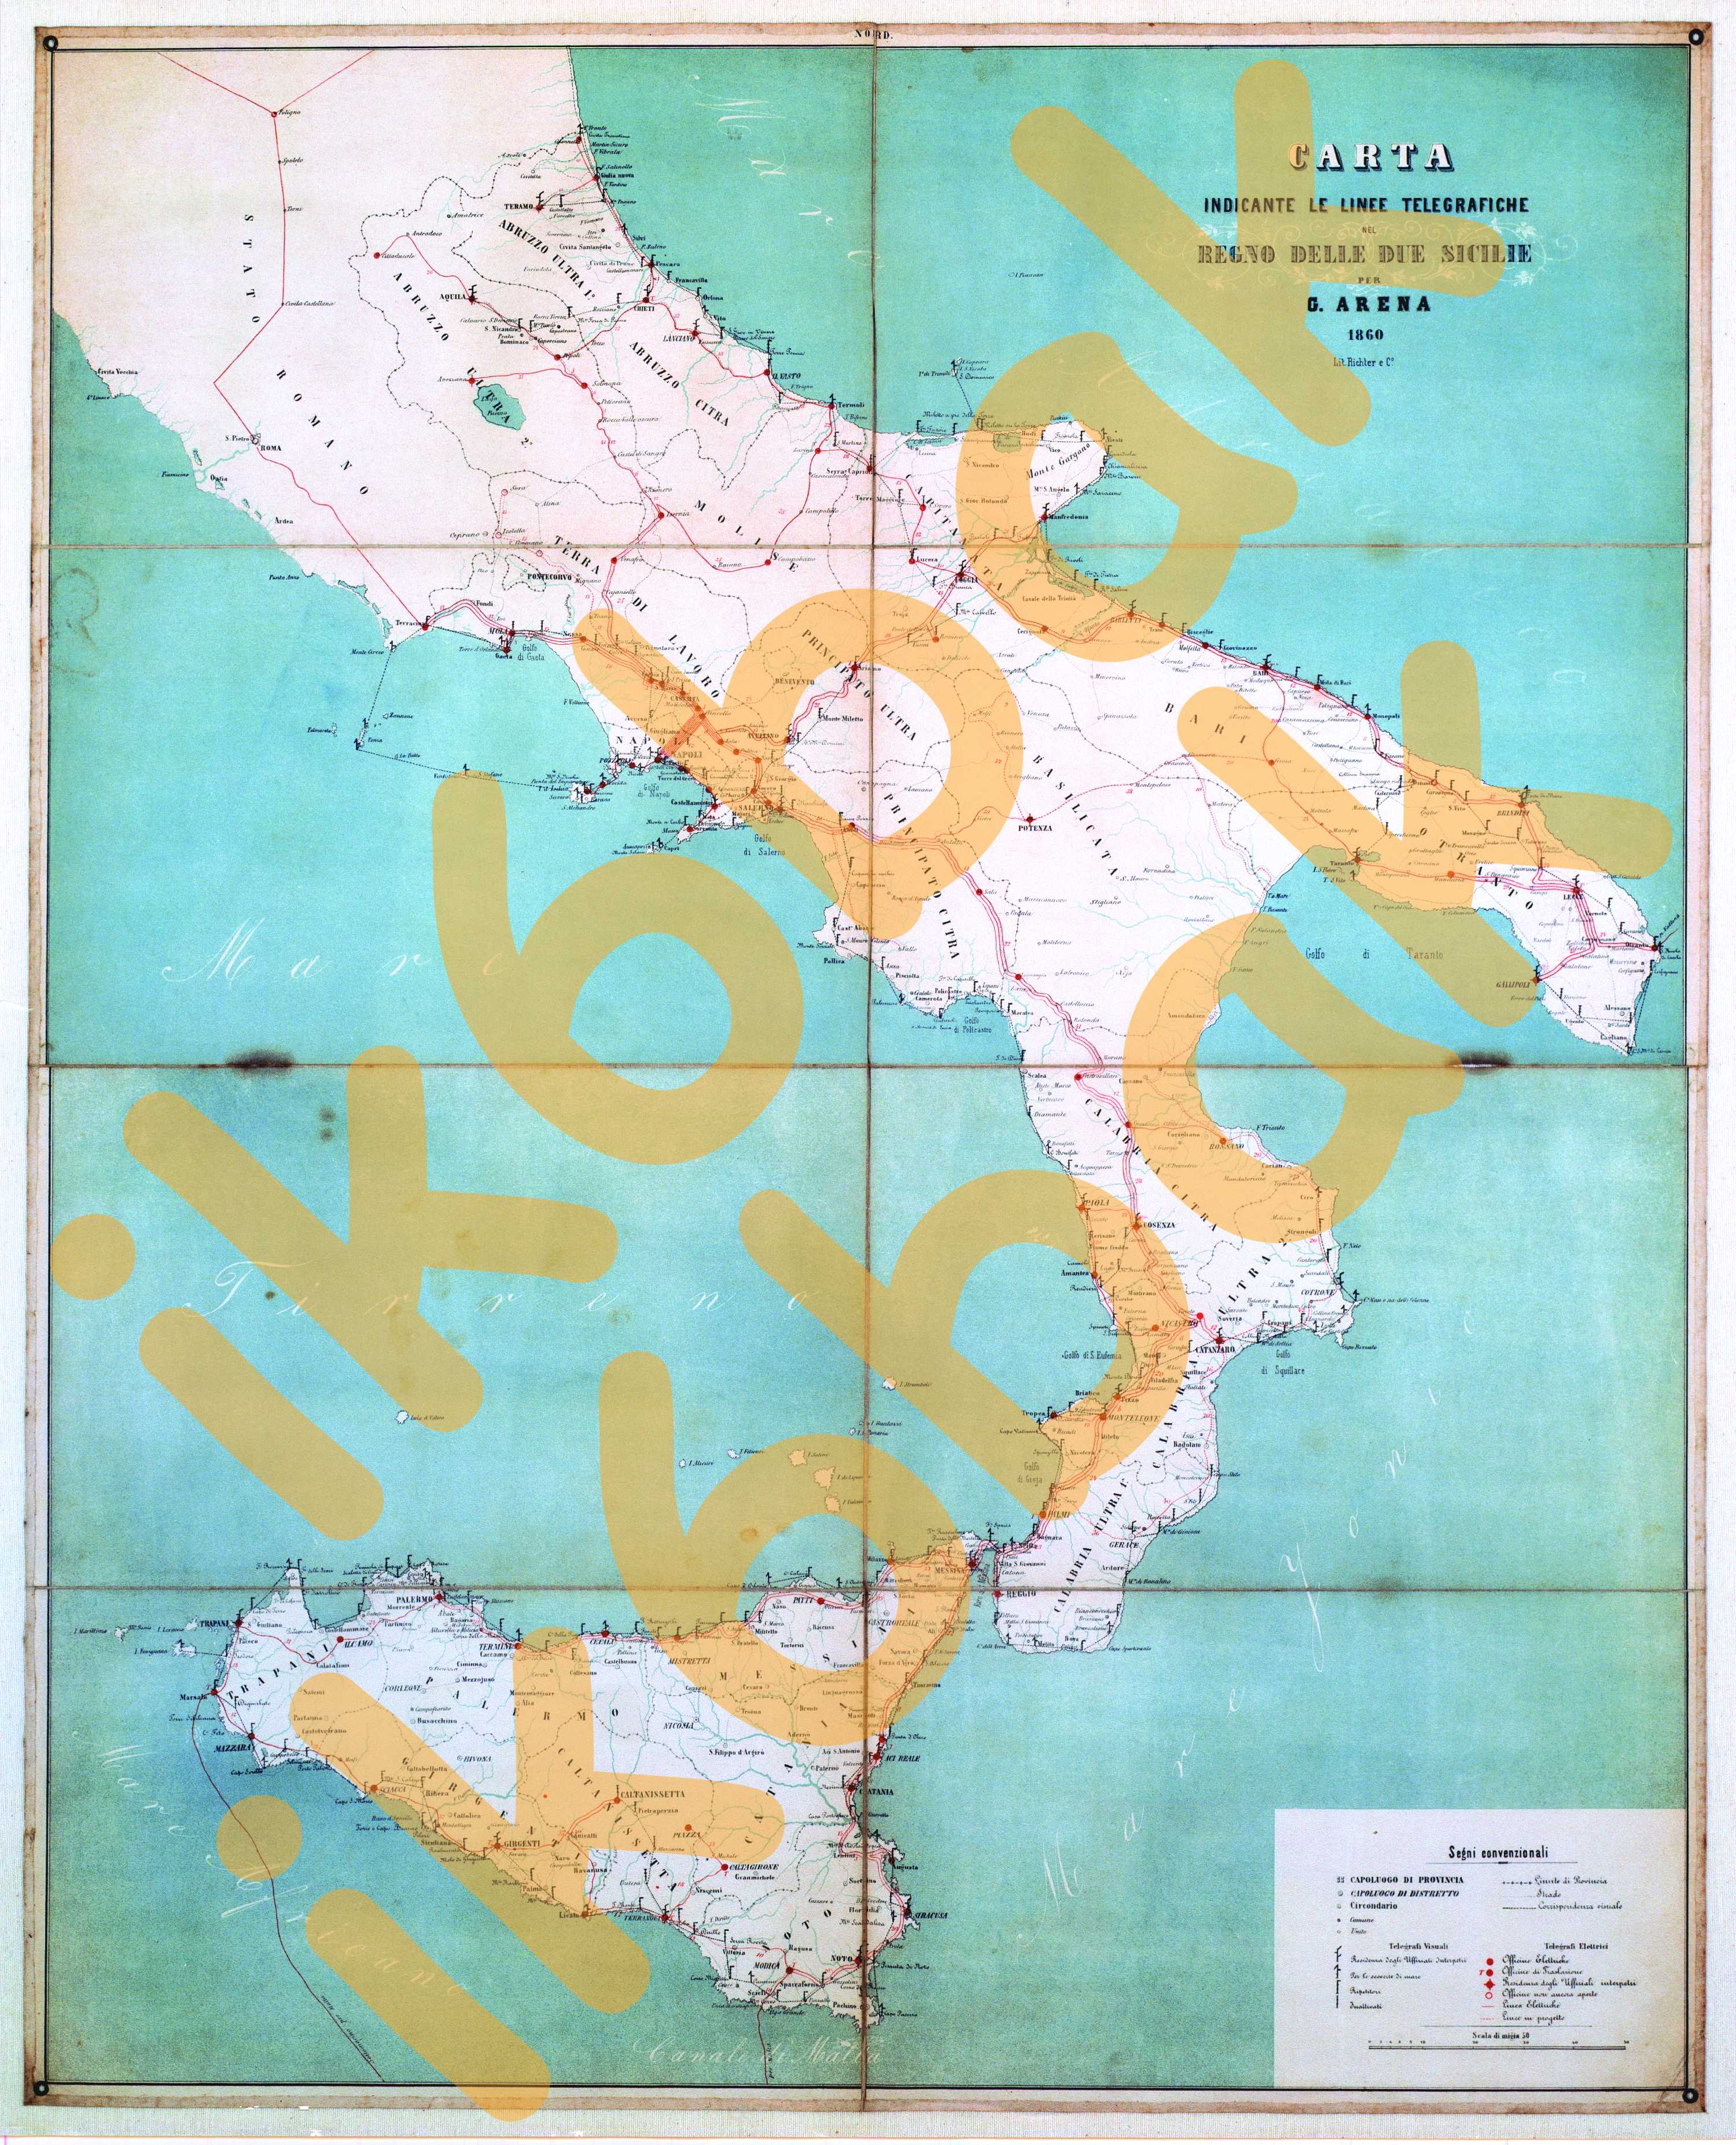 1860 - Mappa telegrafi ottici nel REGNO DELLE DUE SICILIE